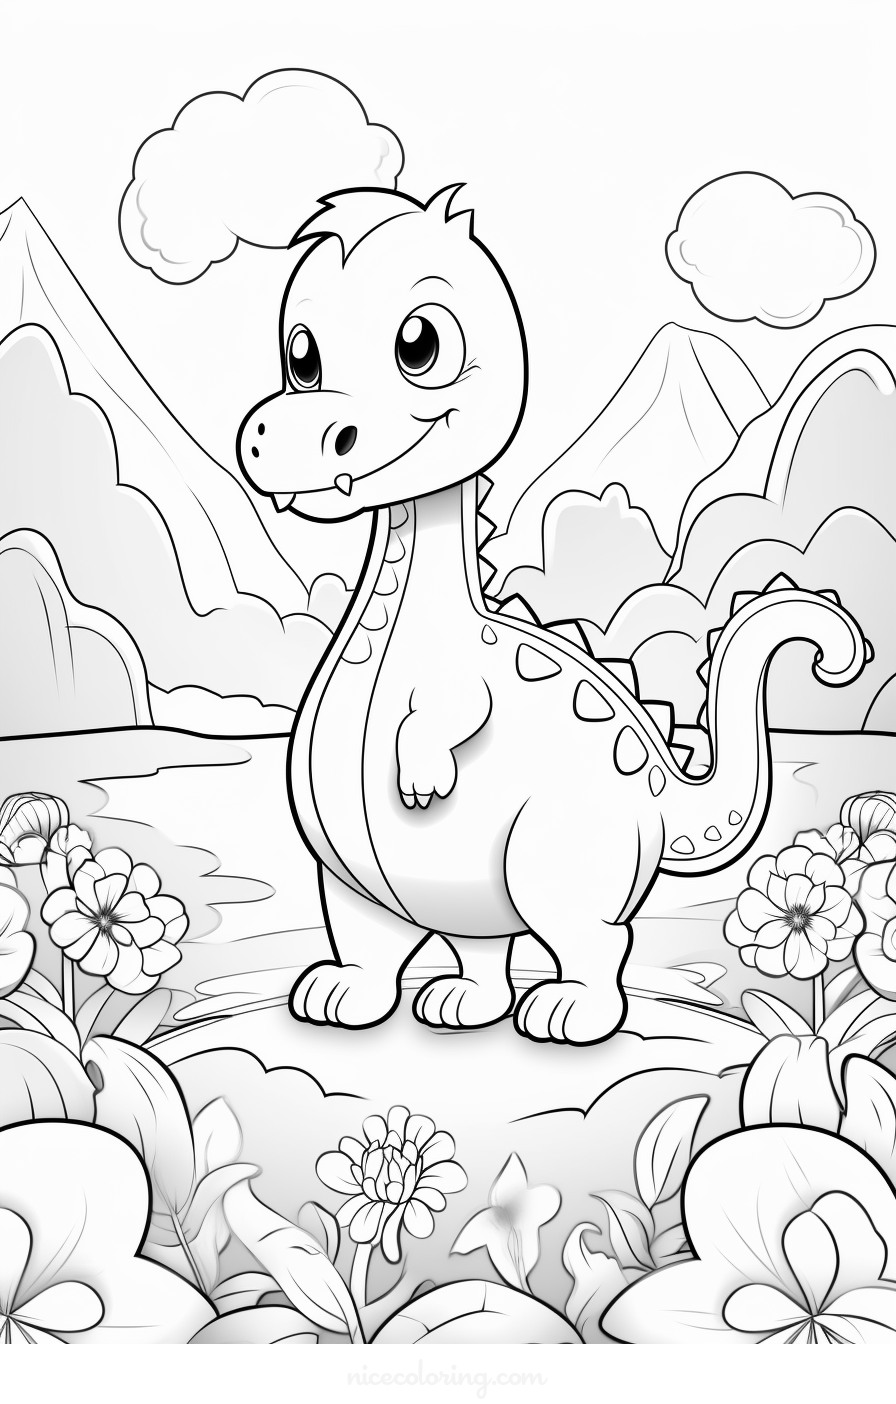 Uma cena detalhada de dinossauros para colorir.